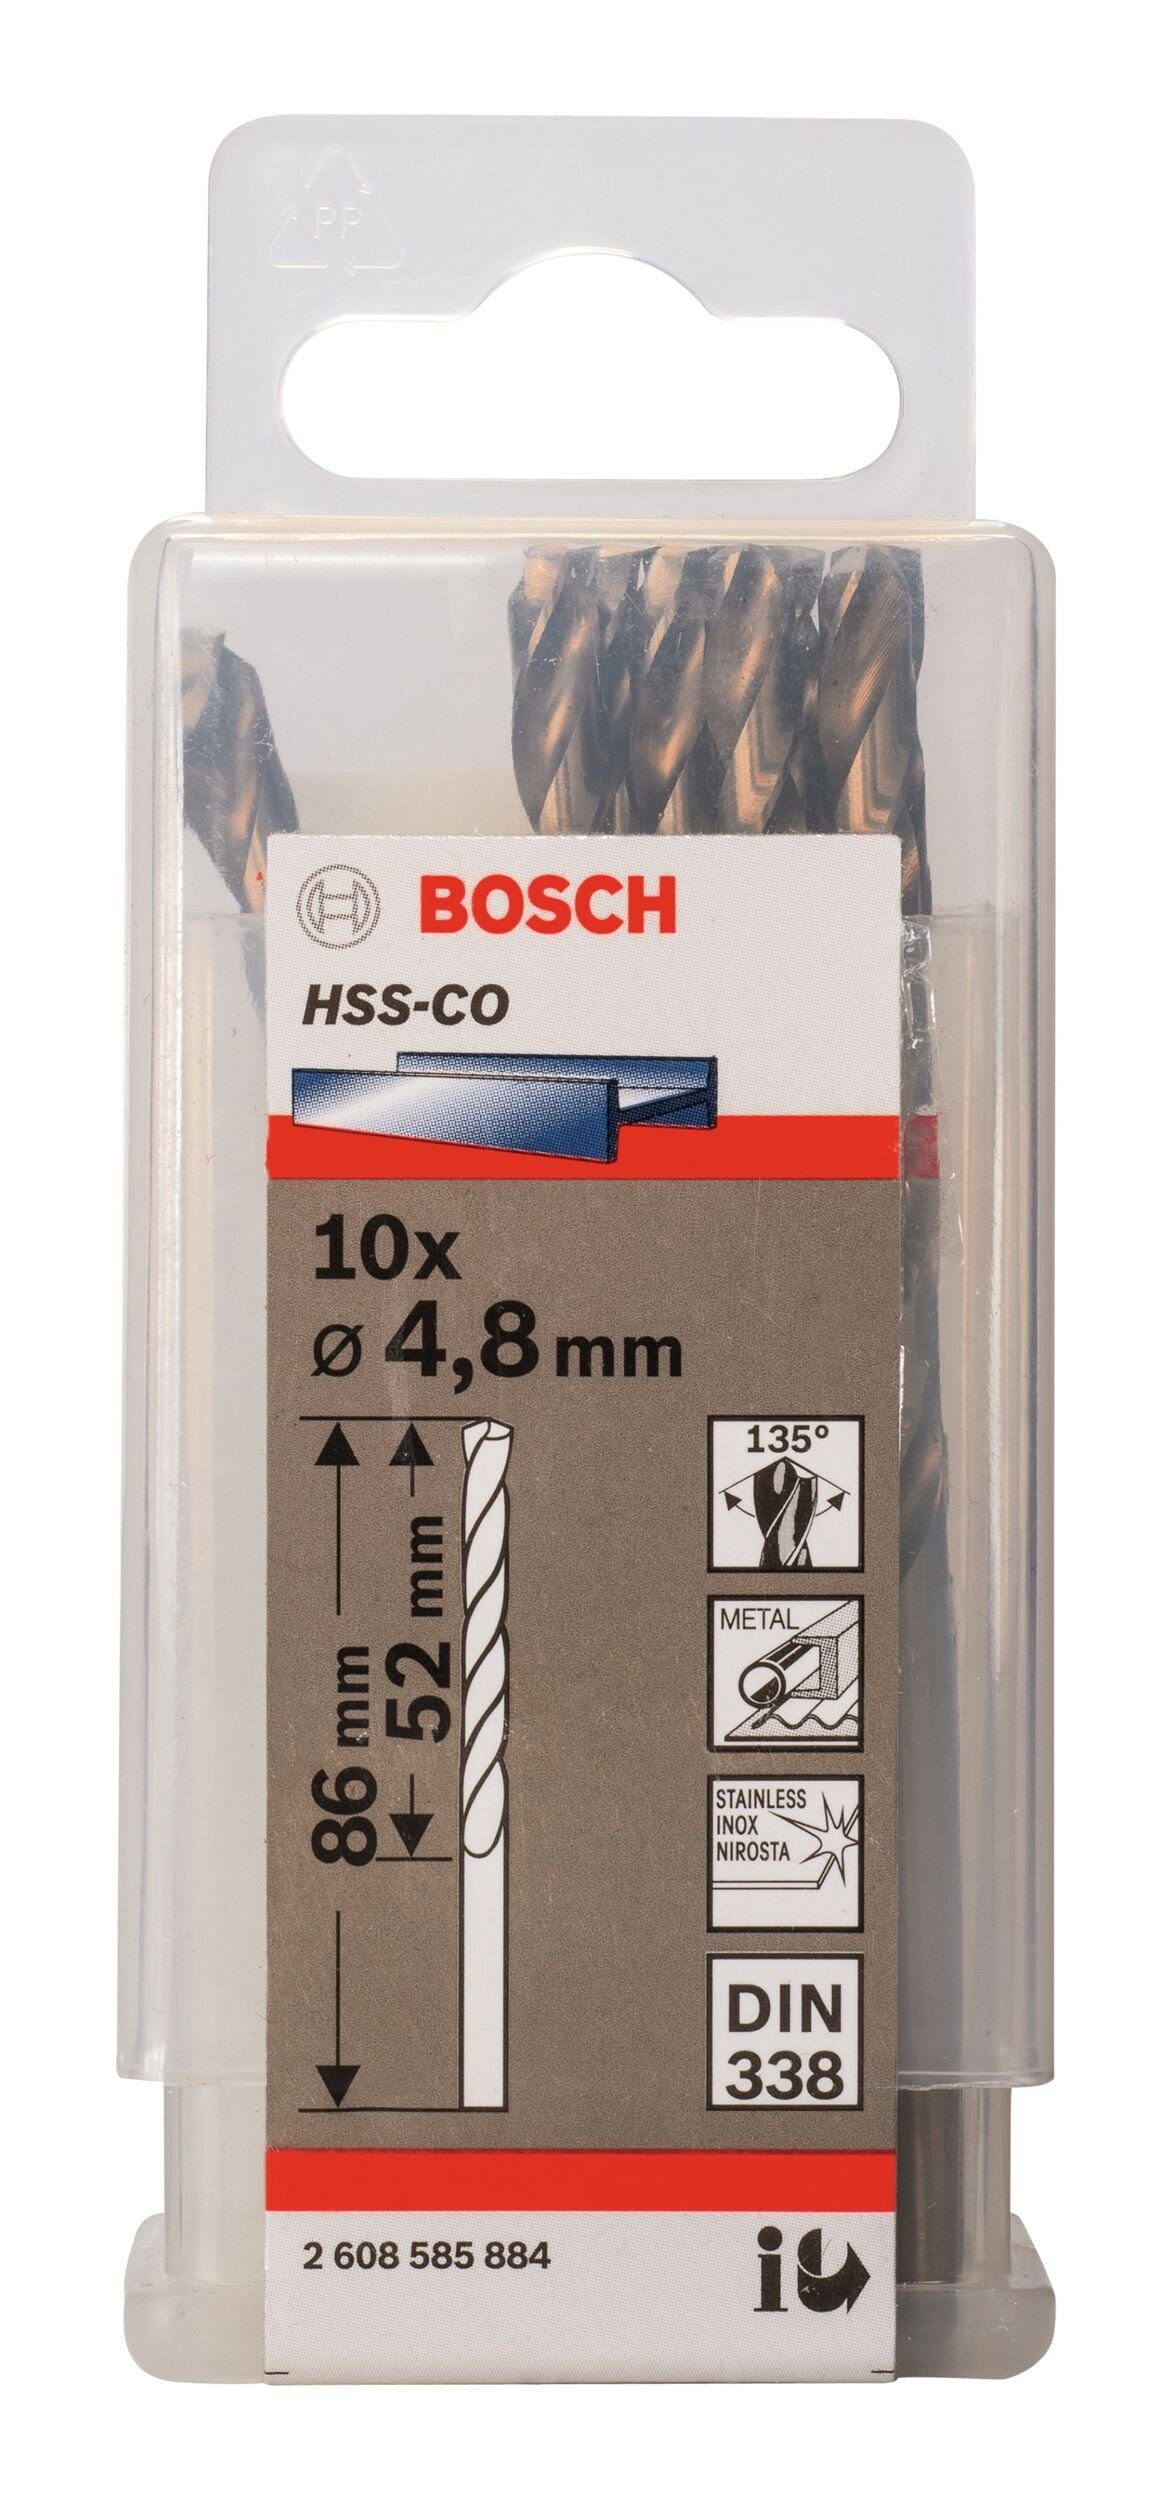 - Stück), BOSCH (DIN x 338) HSS-Co - mm Metallbohrer, 4,8 x 10er-Pack (10 86 52